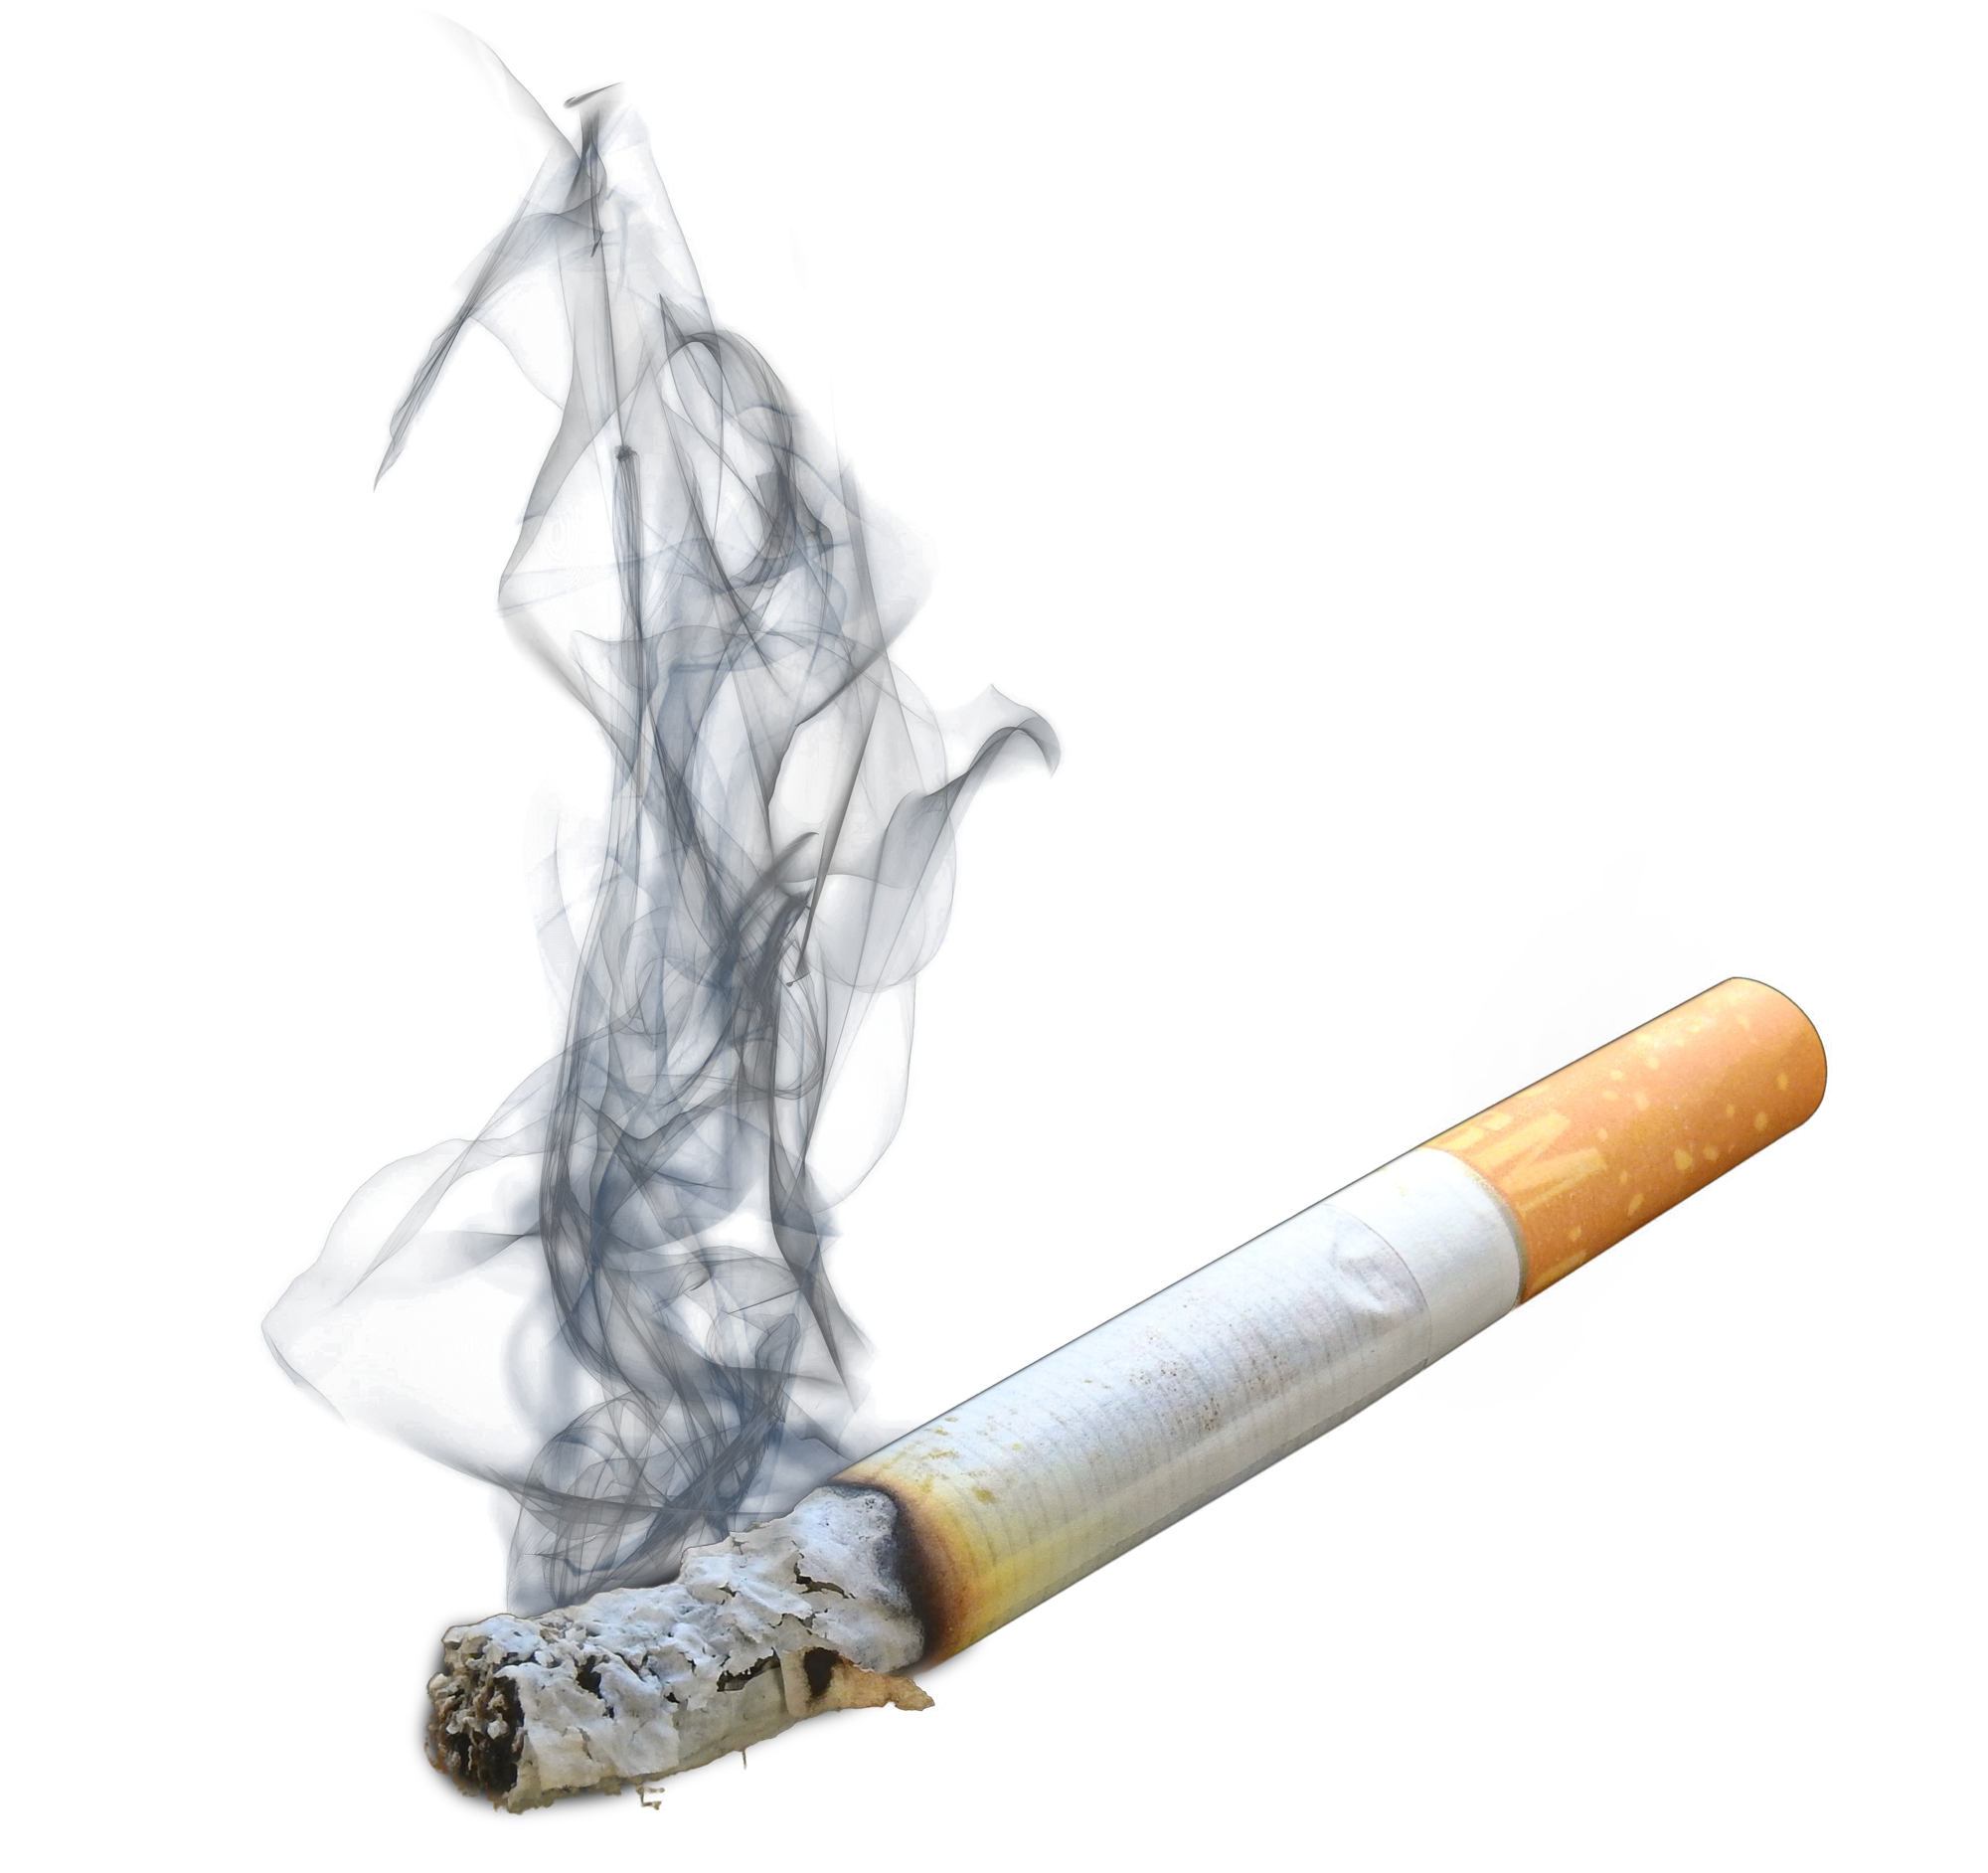 Cigarette, Tobacco, Vices, Ad